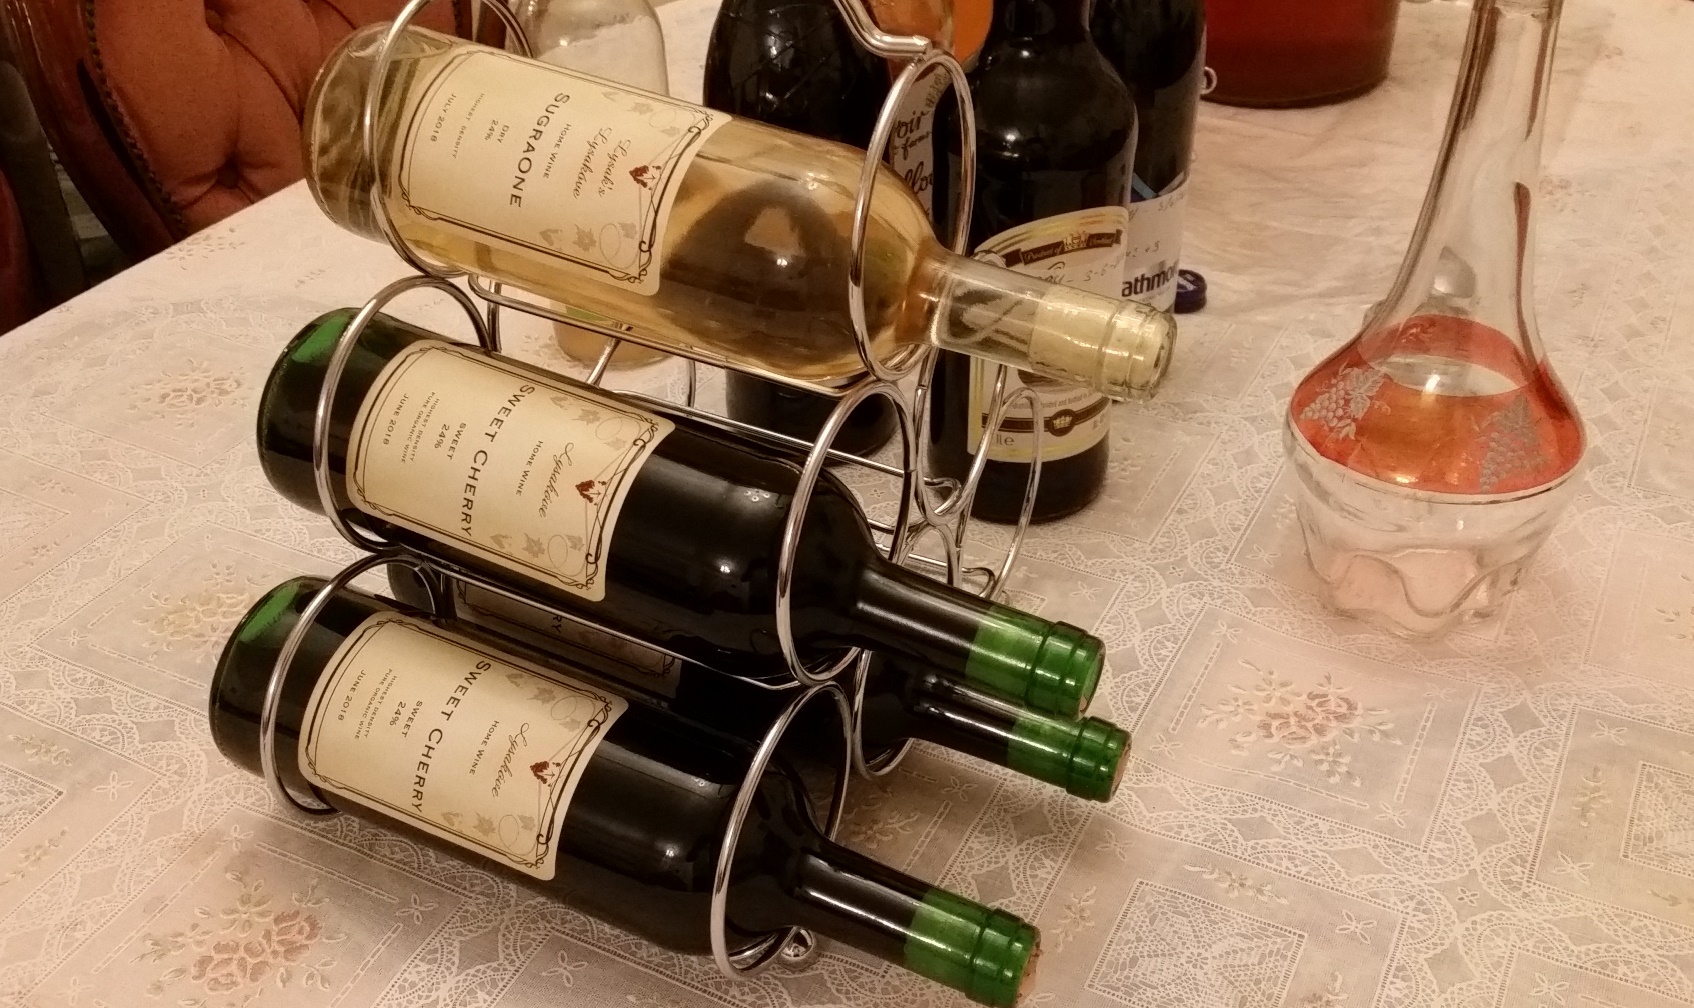 Yet another wine season has begun